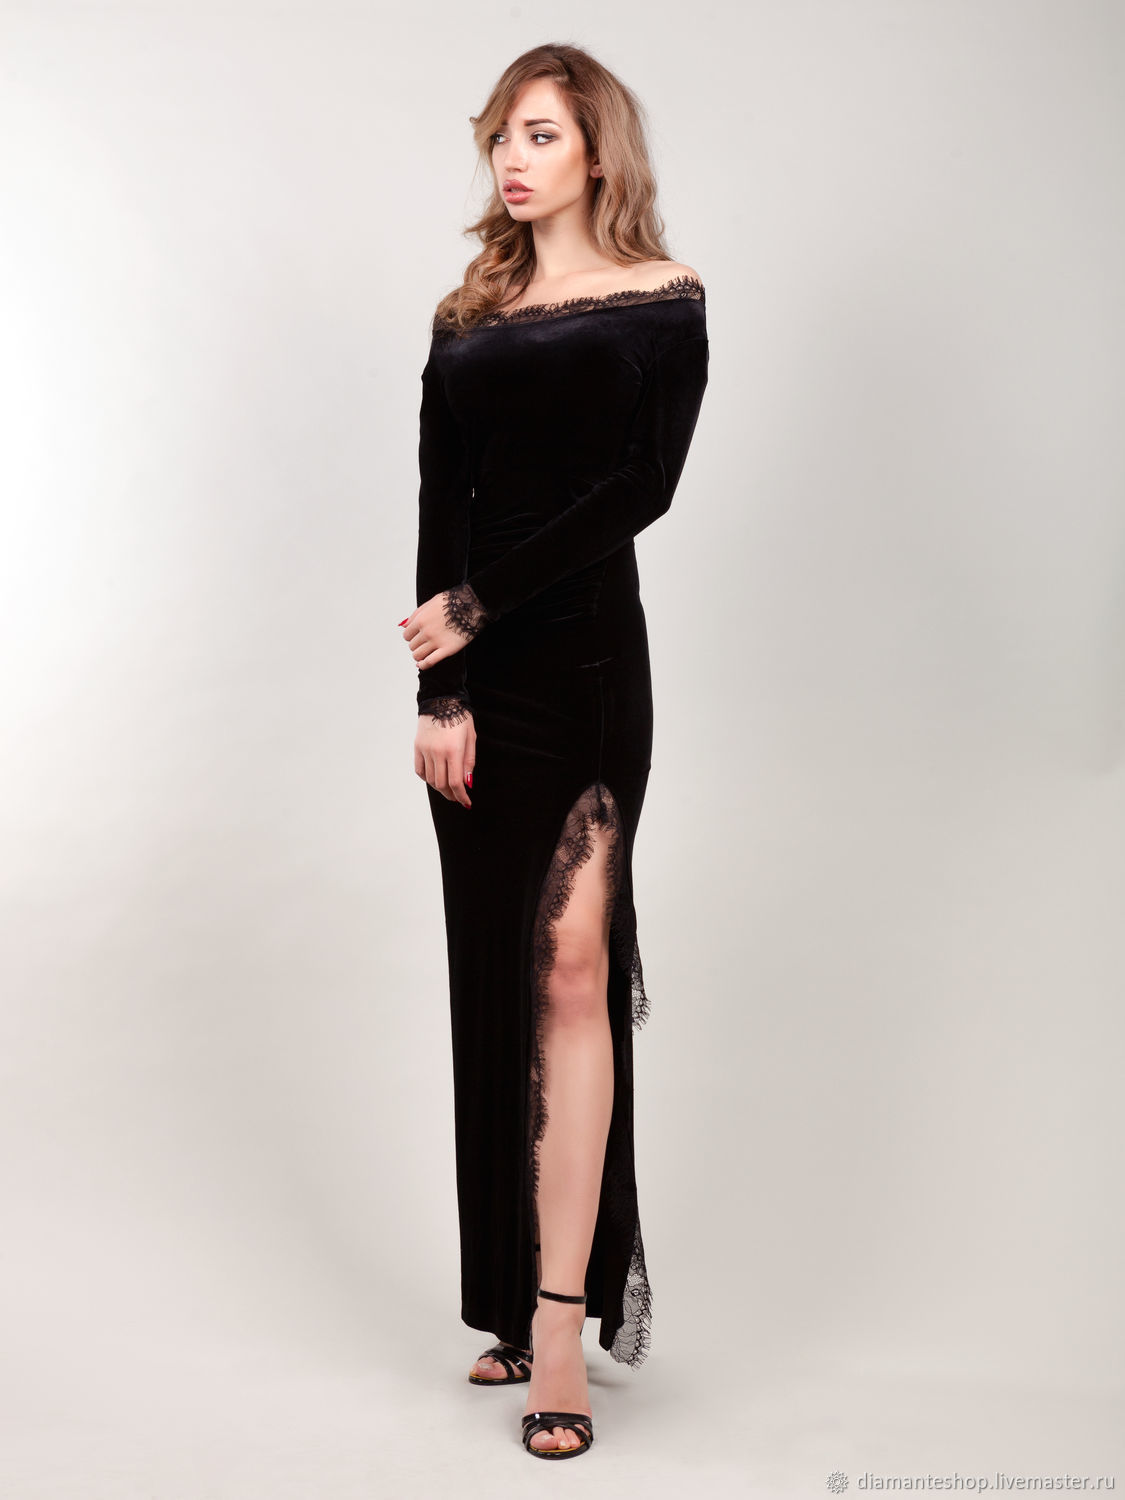 Длинное бархатное платье. Nicole Farhi платье бархатное. Платье Elis черное бархатное. Nicole Farhi платье черное. Платья Elis чёрное баохотное.